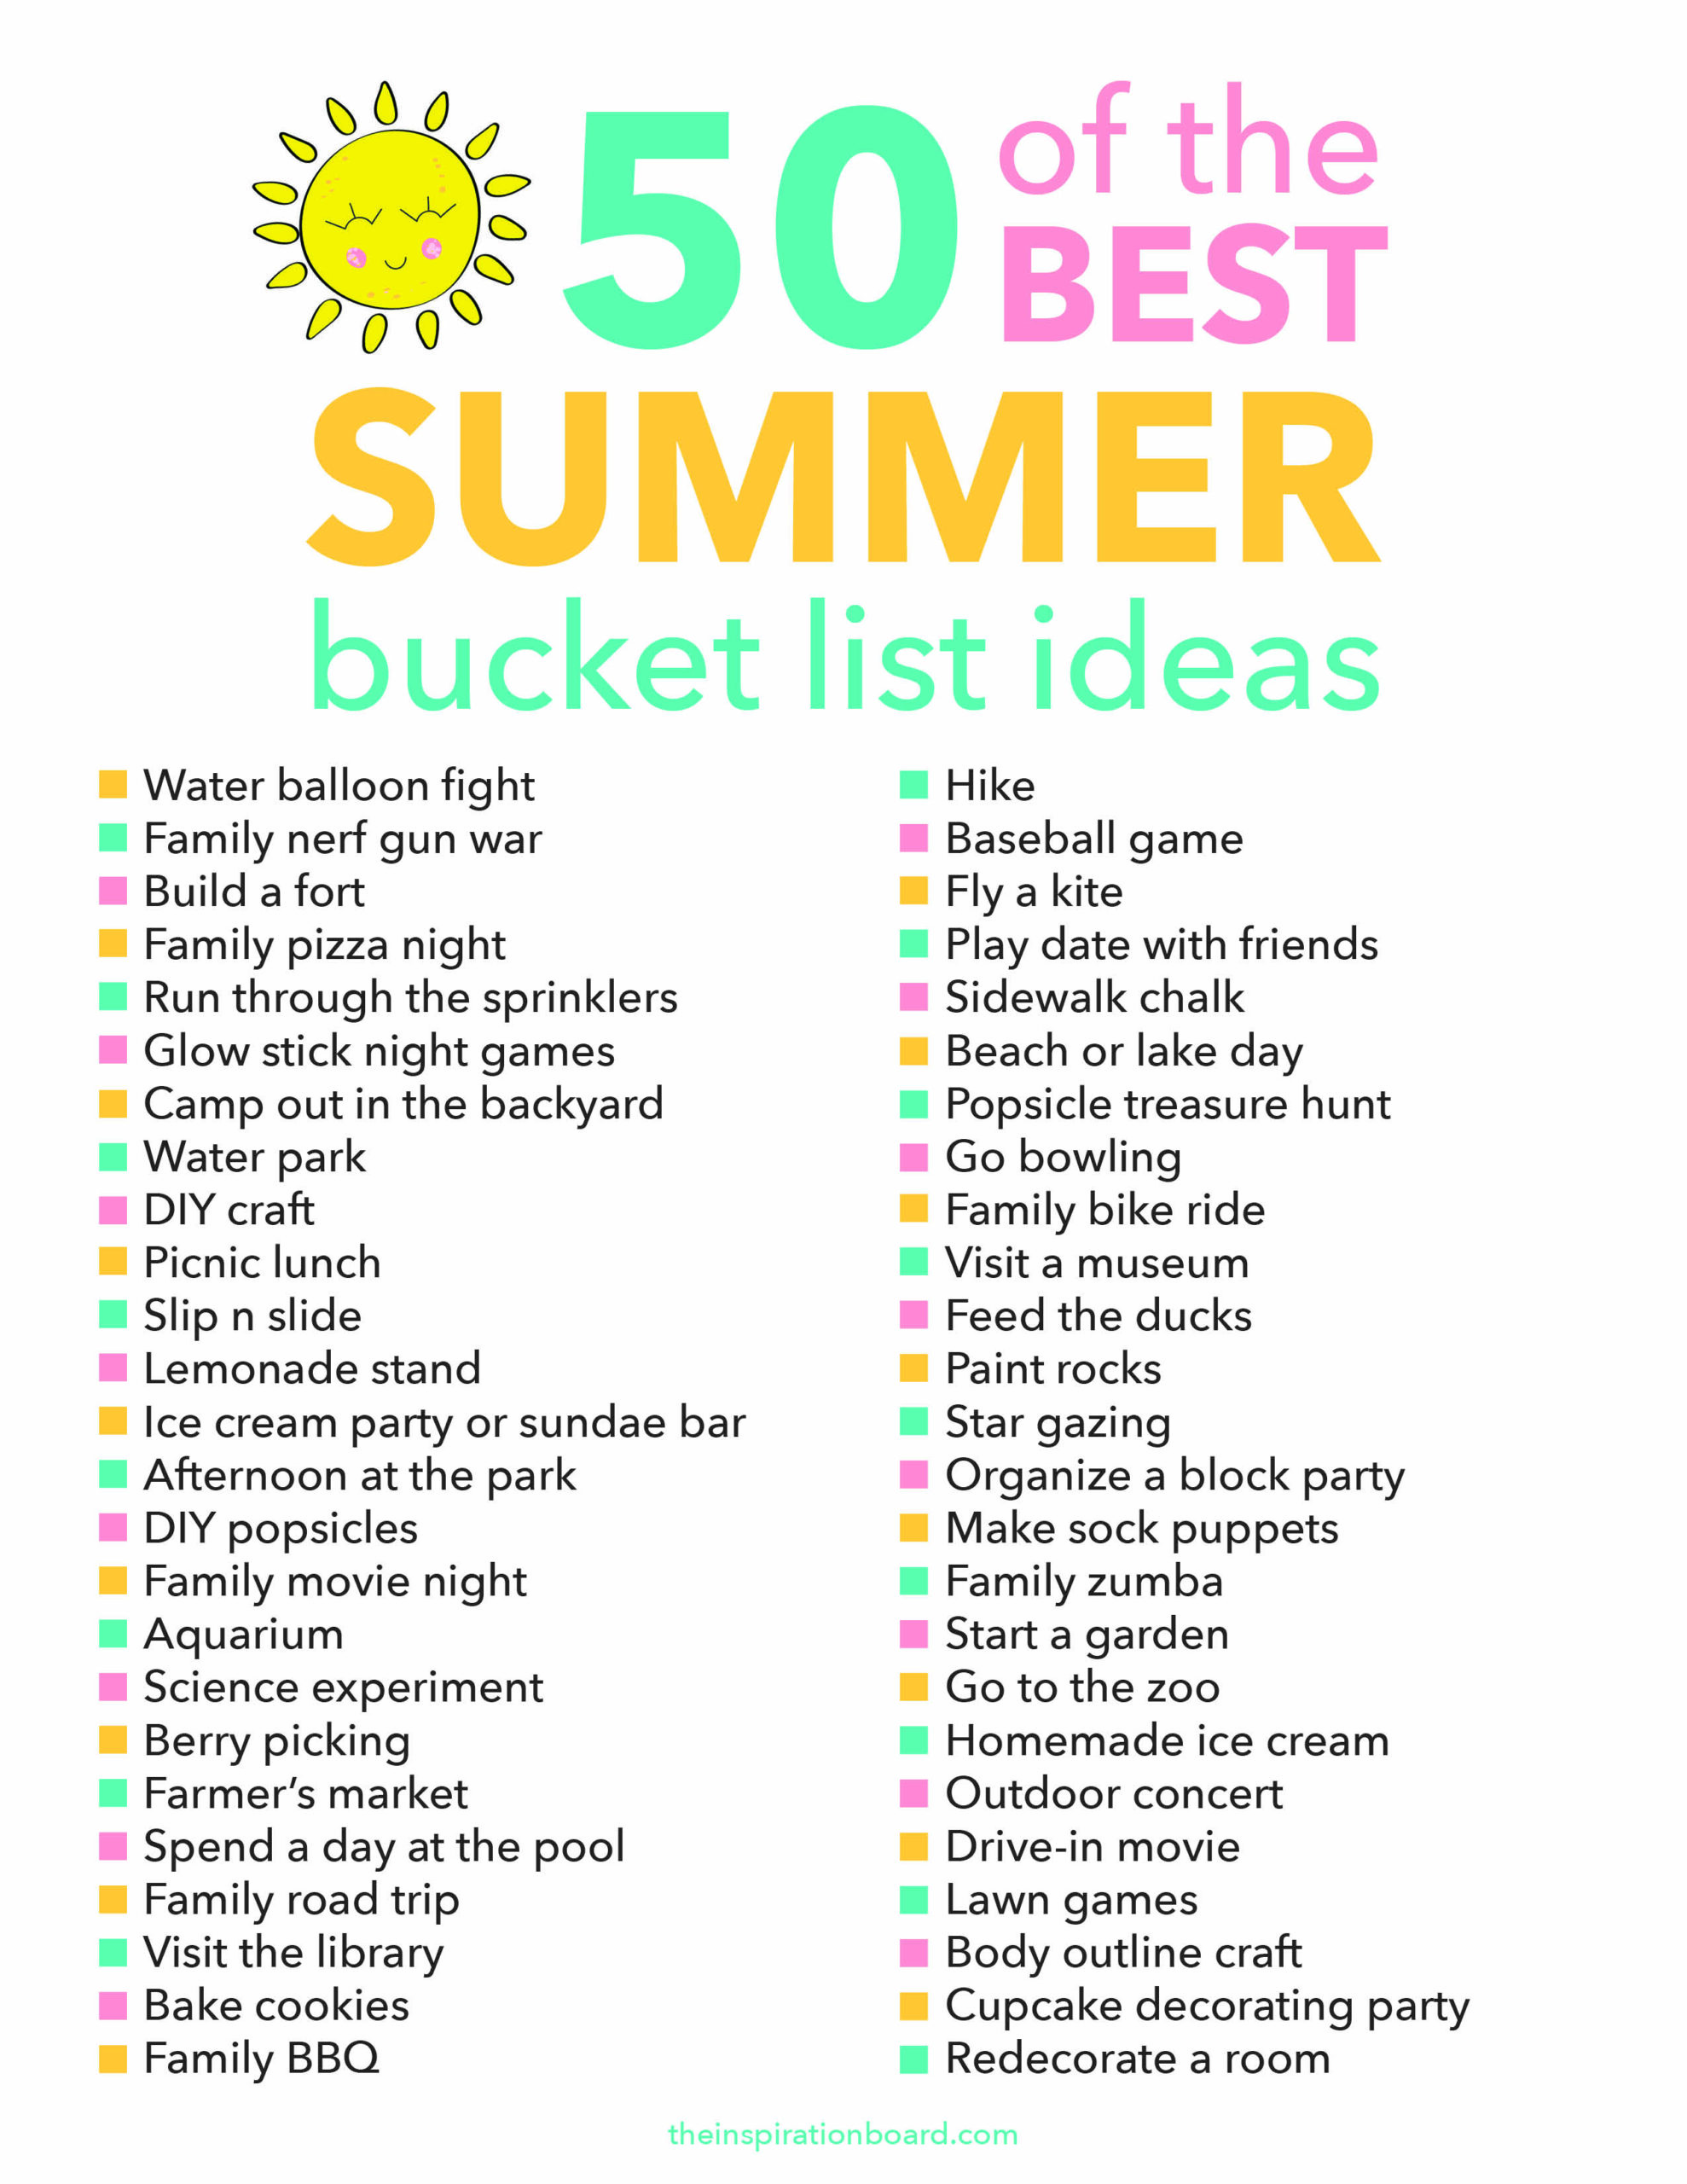 Free Summer Bucket List Printable